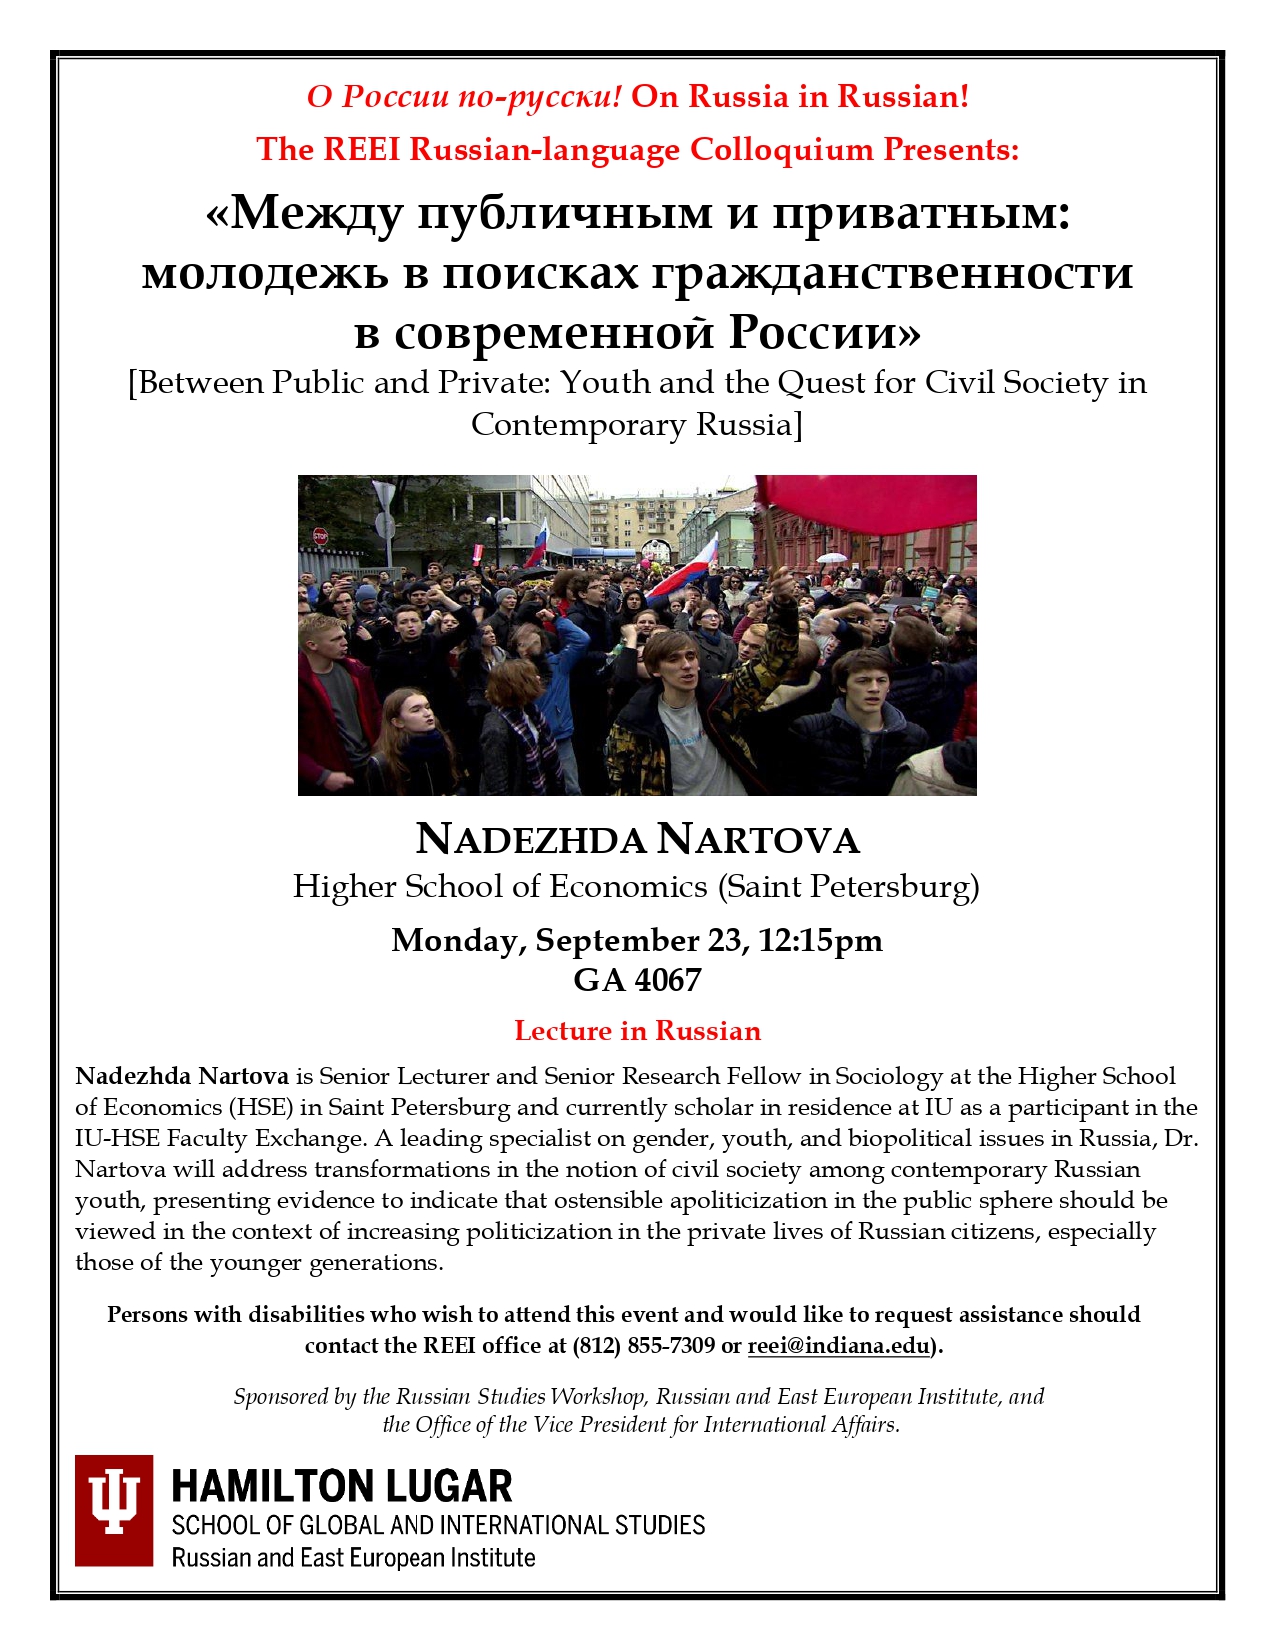 Nadezhda-Nartova-Flyer-09.09-MT_page-0001.jpg